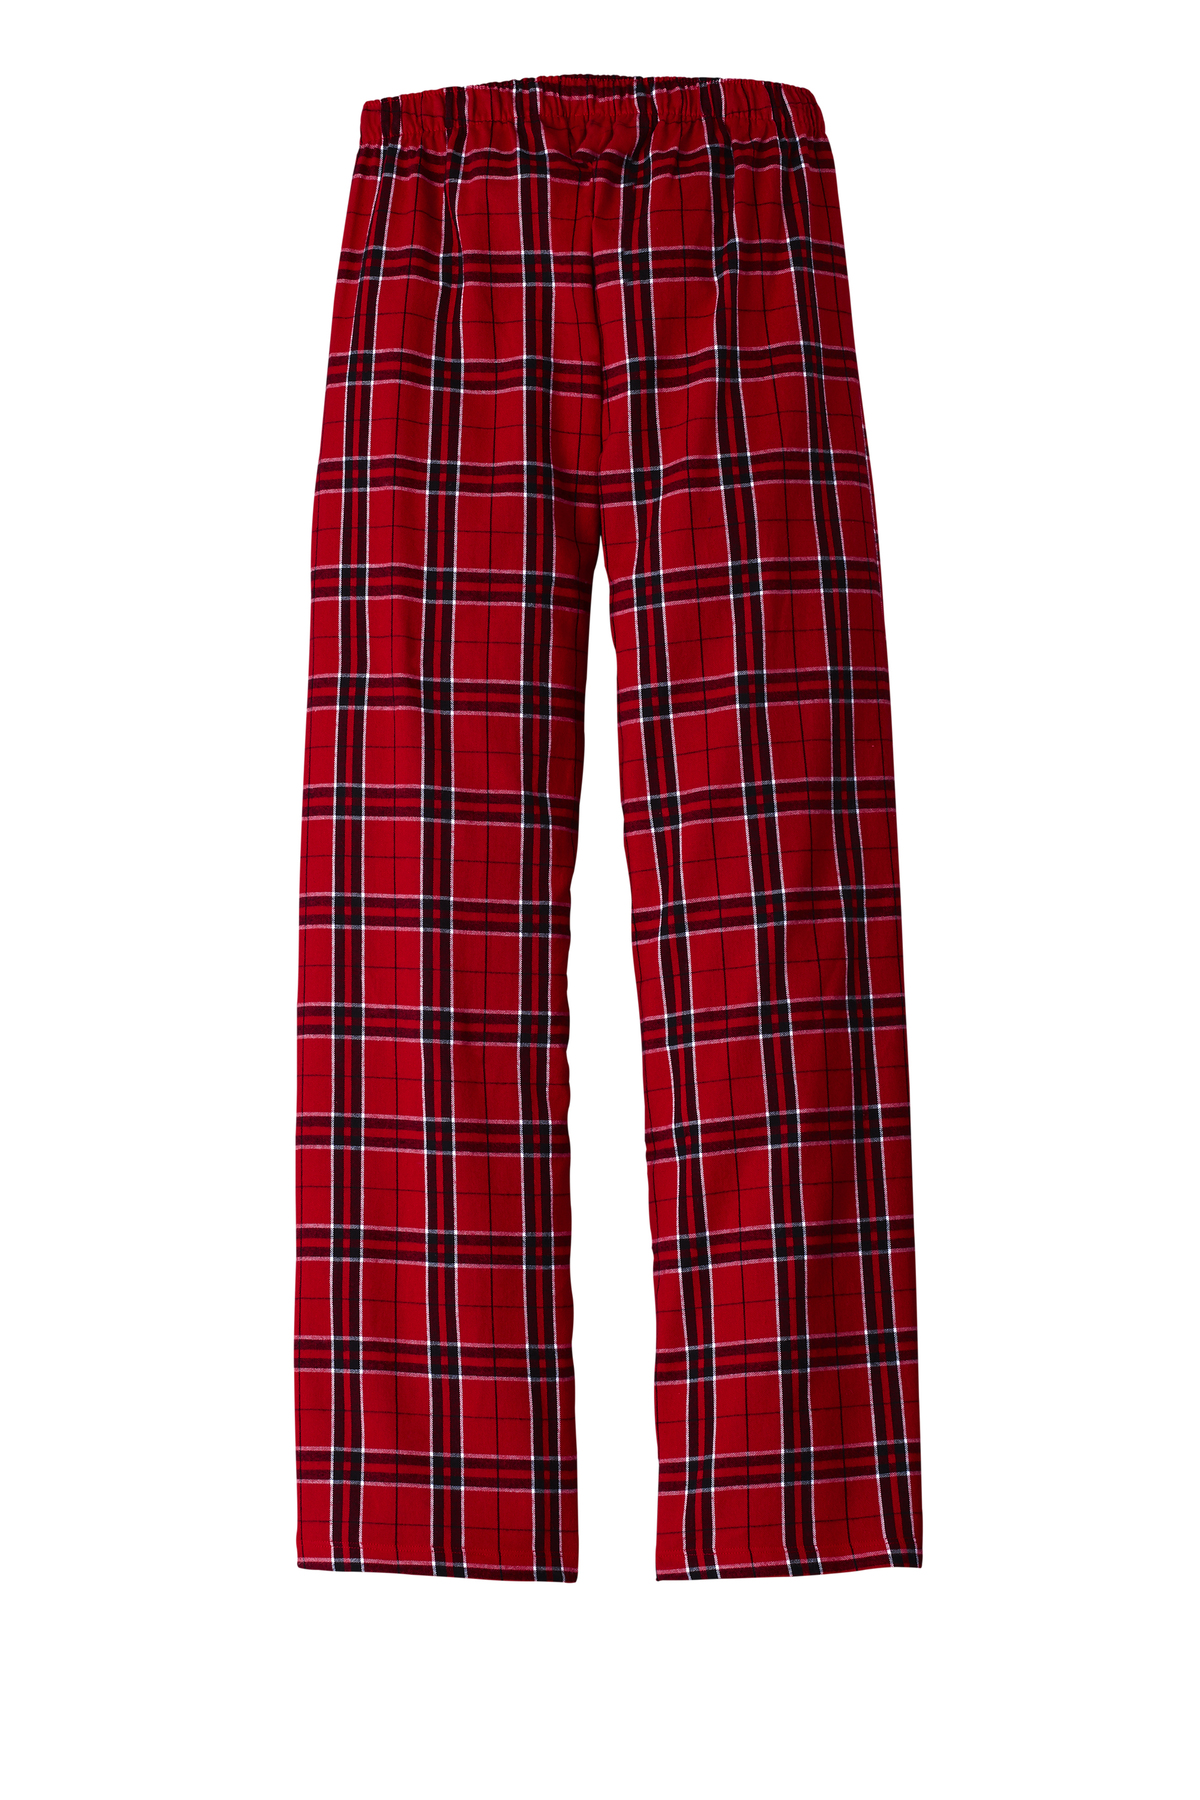 District Women’s Flannel Plaid Pant | Product | SanMar